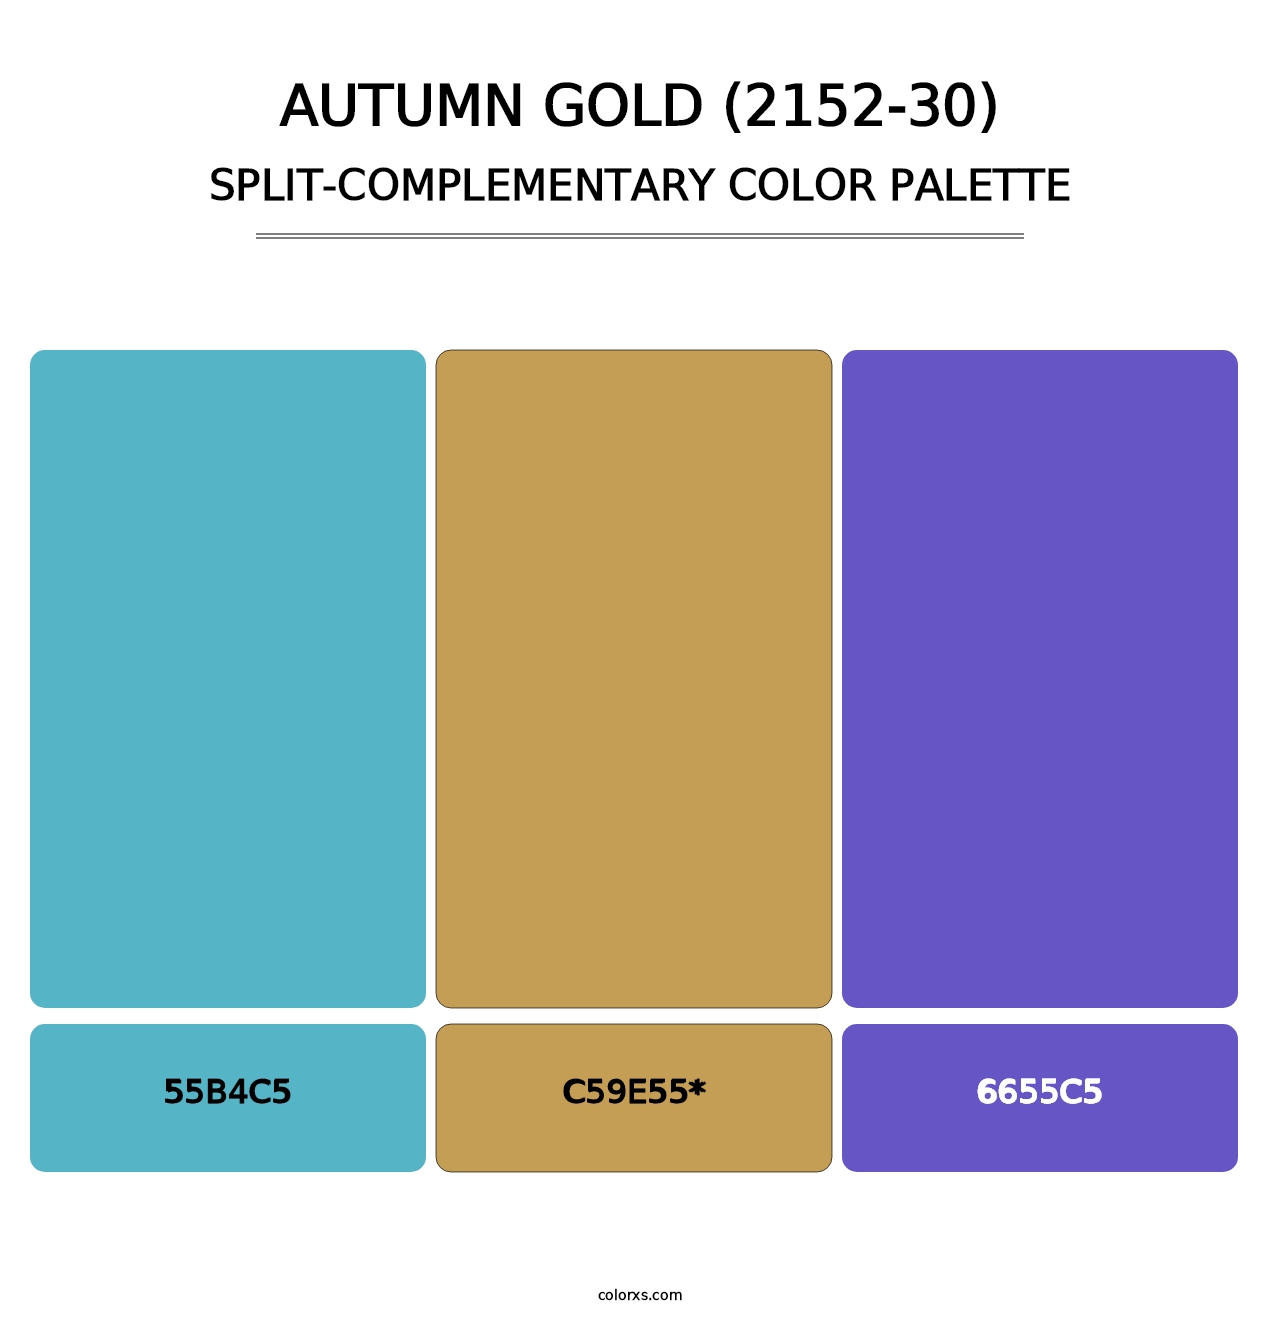 Autumn Gold (2152-30) - Split-Complementary Color Palette